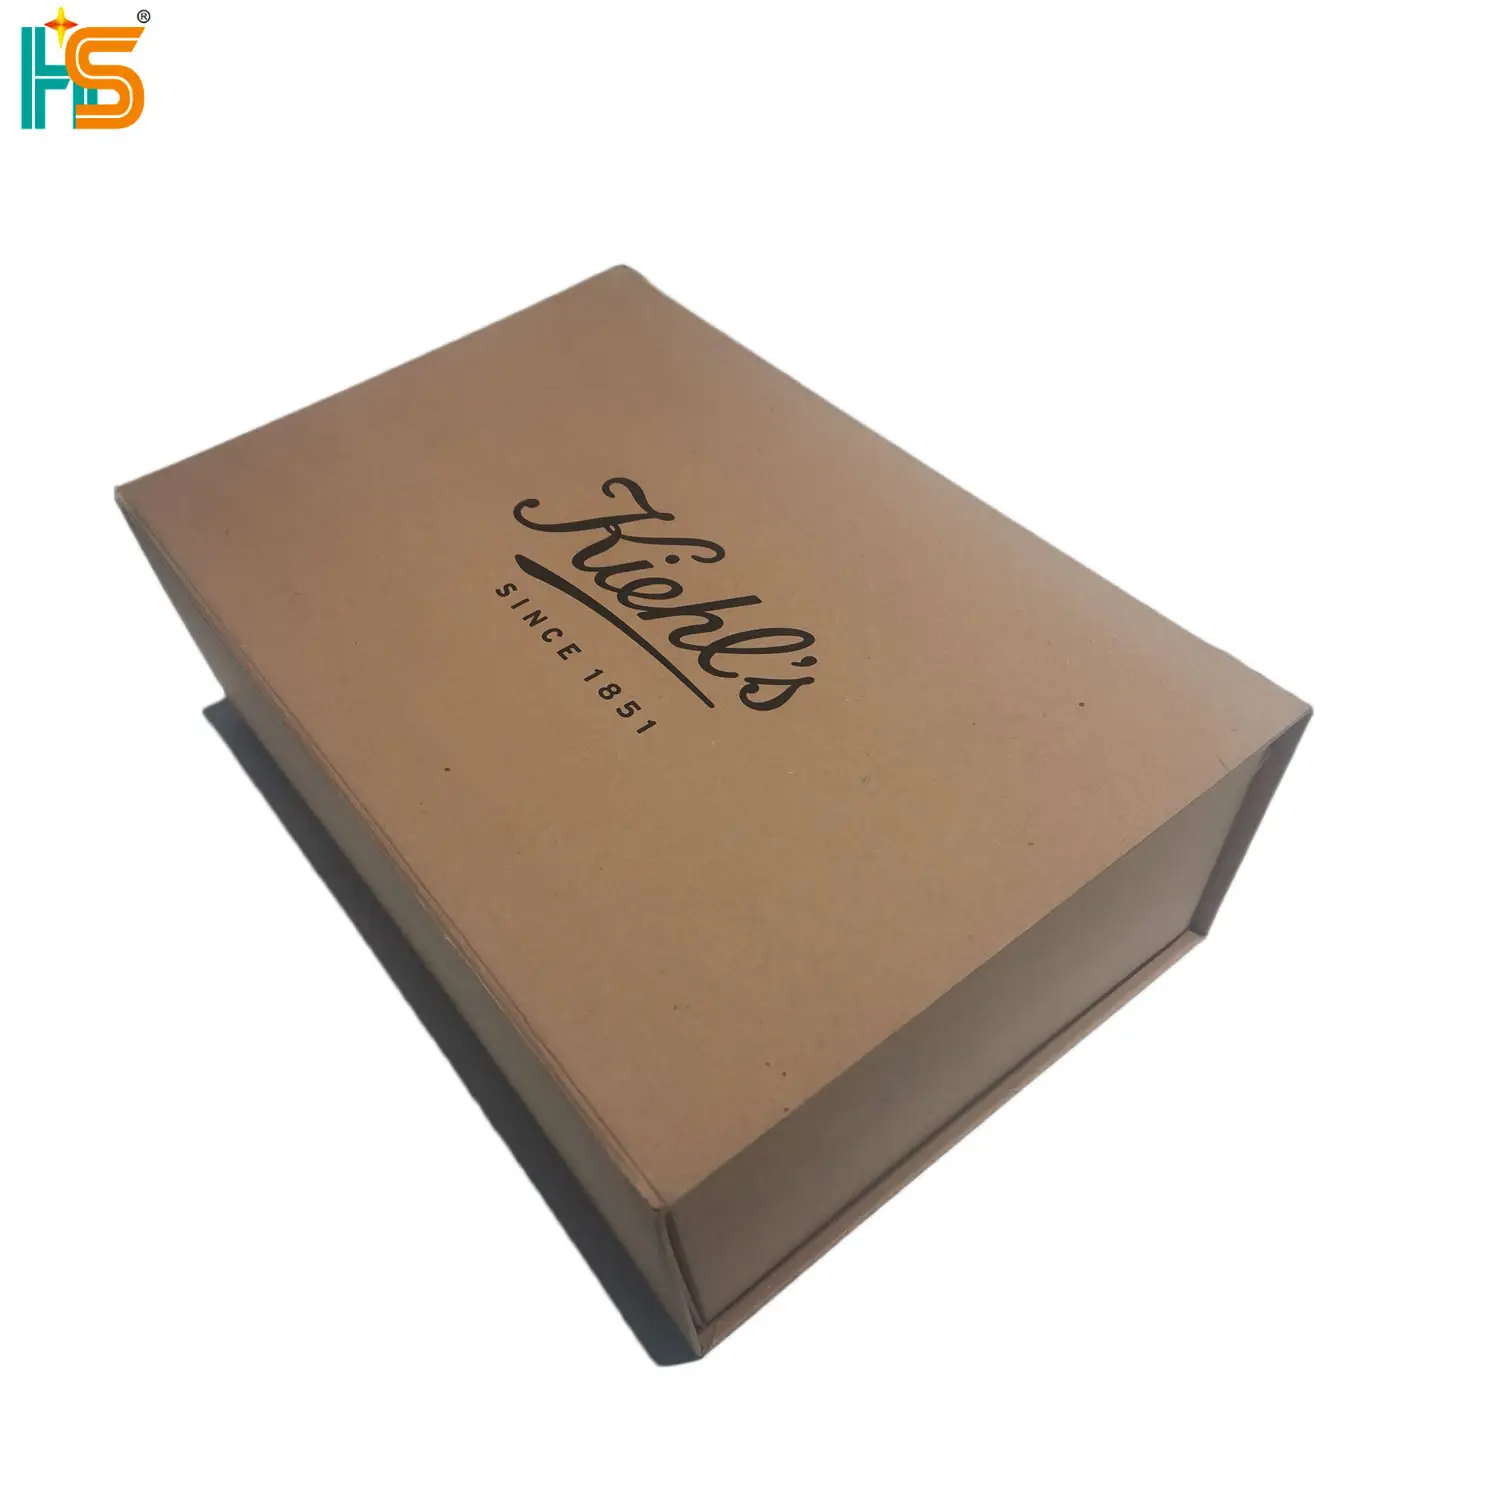 लक्जरी मजबूत Foldable अधोवस्त्र पैकेज क्राफ्ट पेपर बंधनेवाला उपहार चुंबकीय क्लोजर बॉक्स अपने खुद के लोगो के साथ